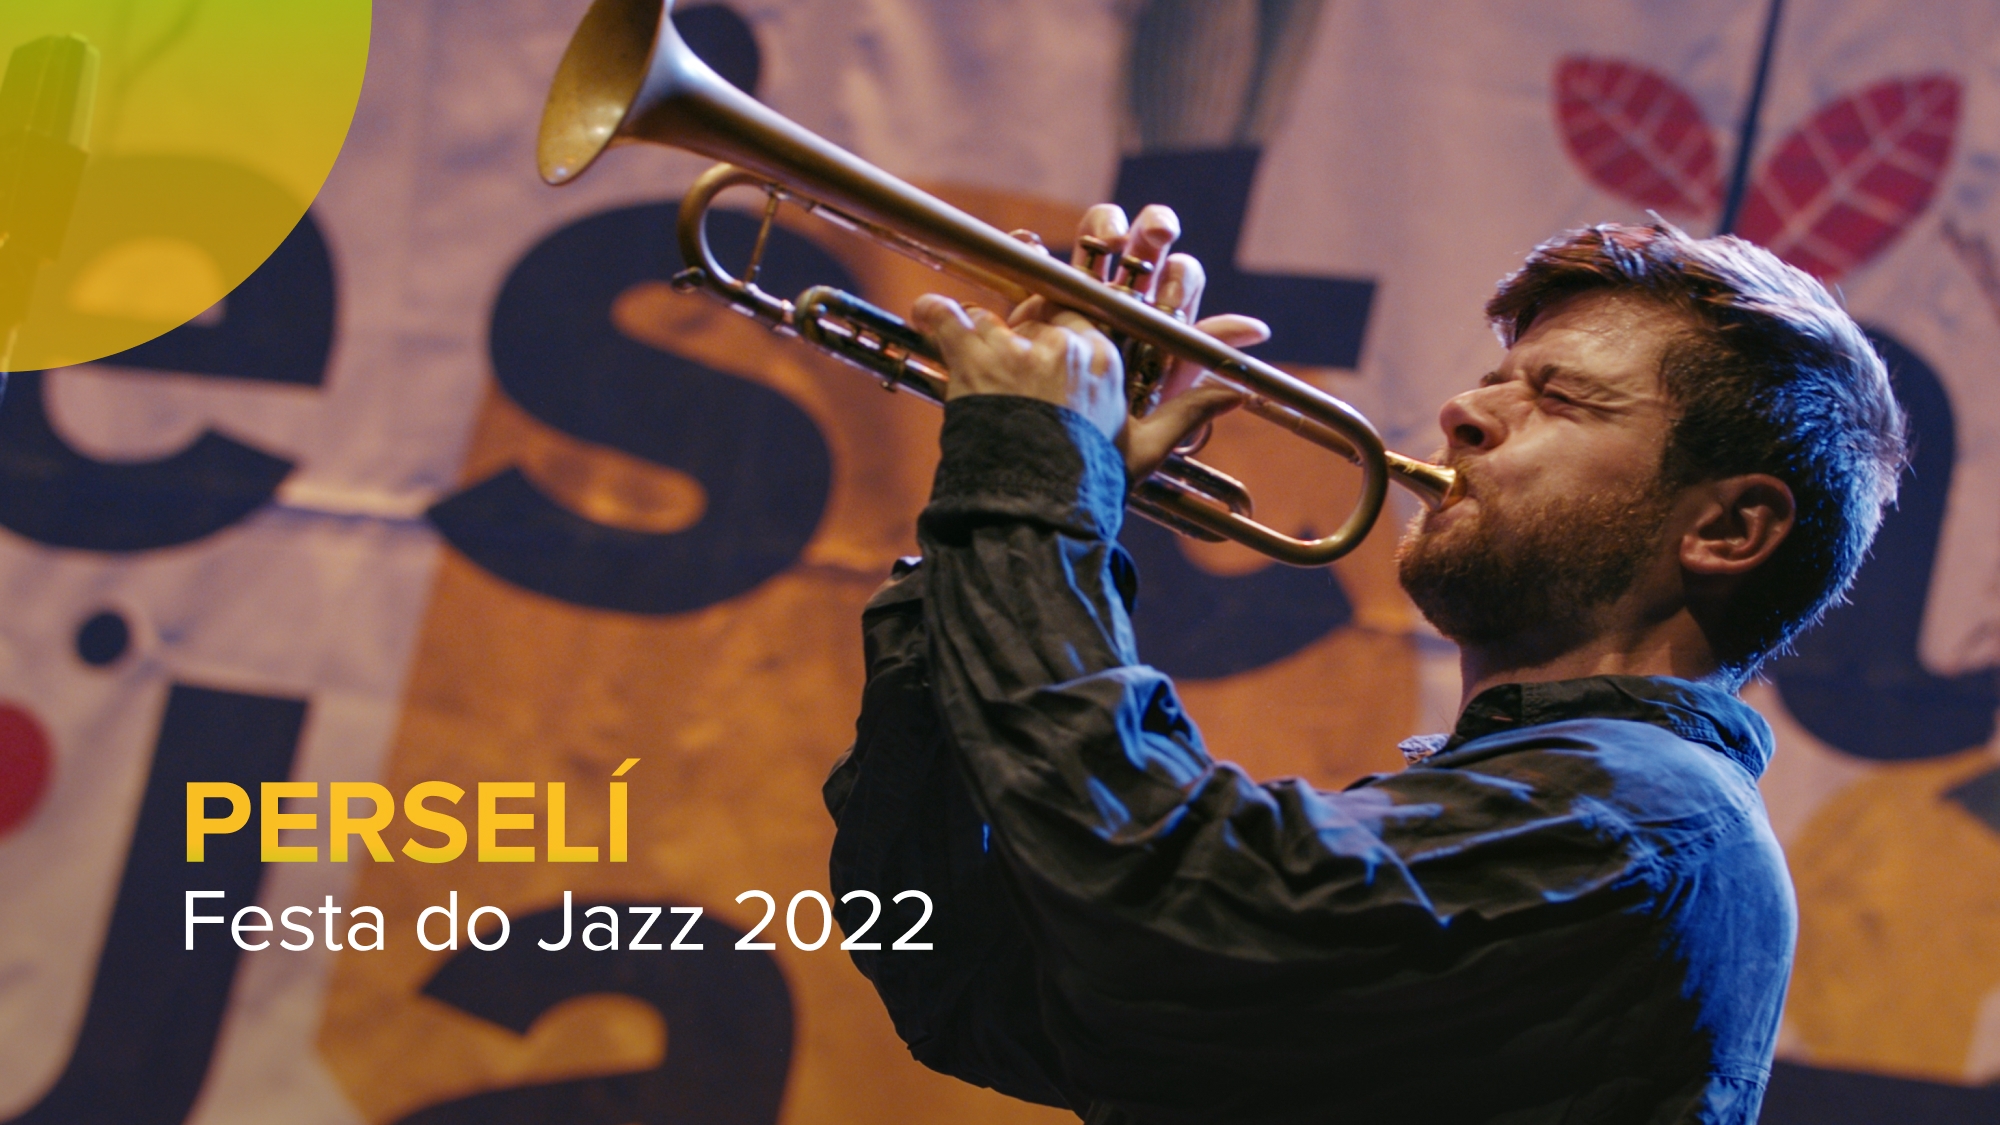 Festa do Jazz 2022